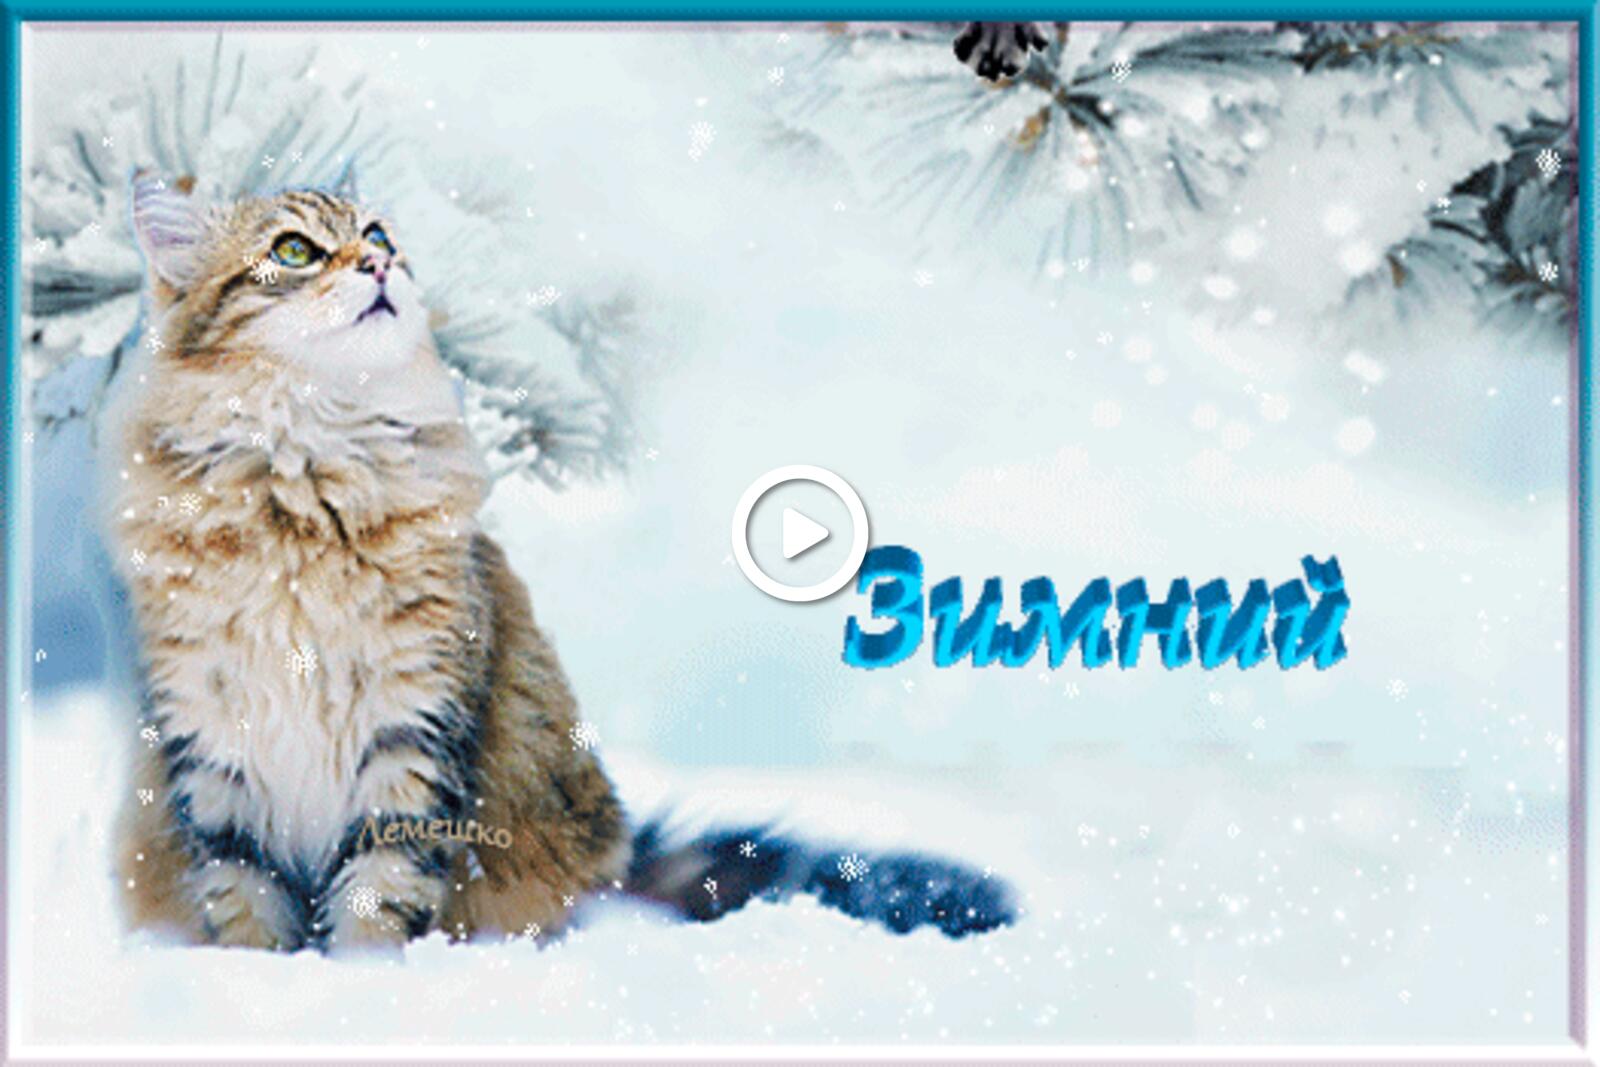 一张以降雪 3d 文本 姜猫为主题的明信片